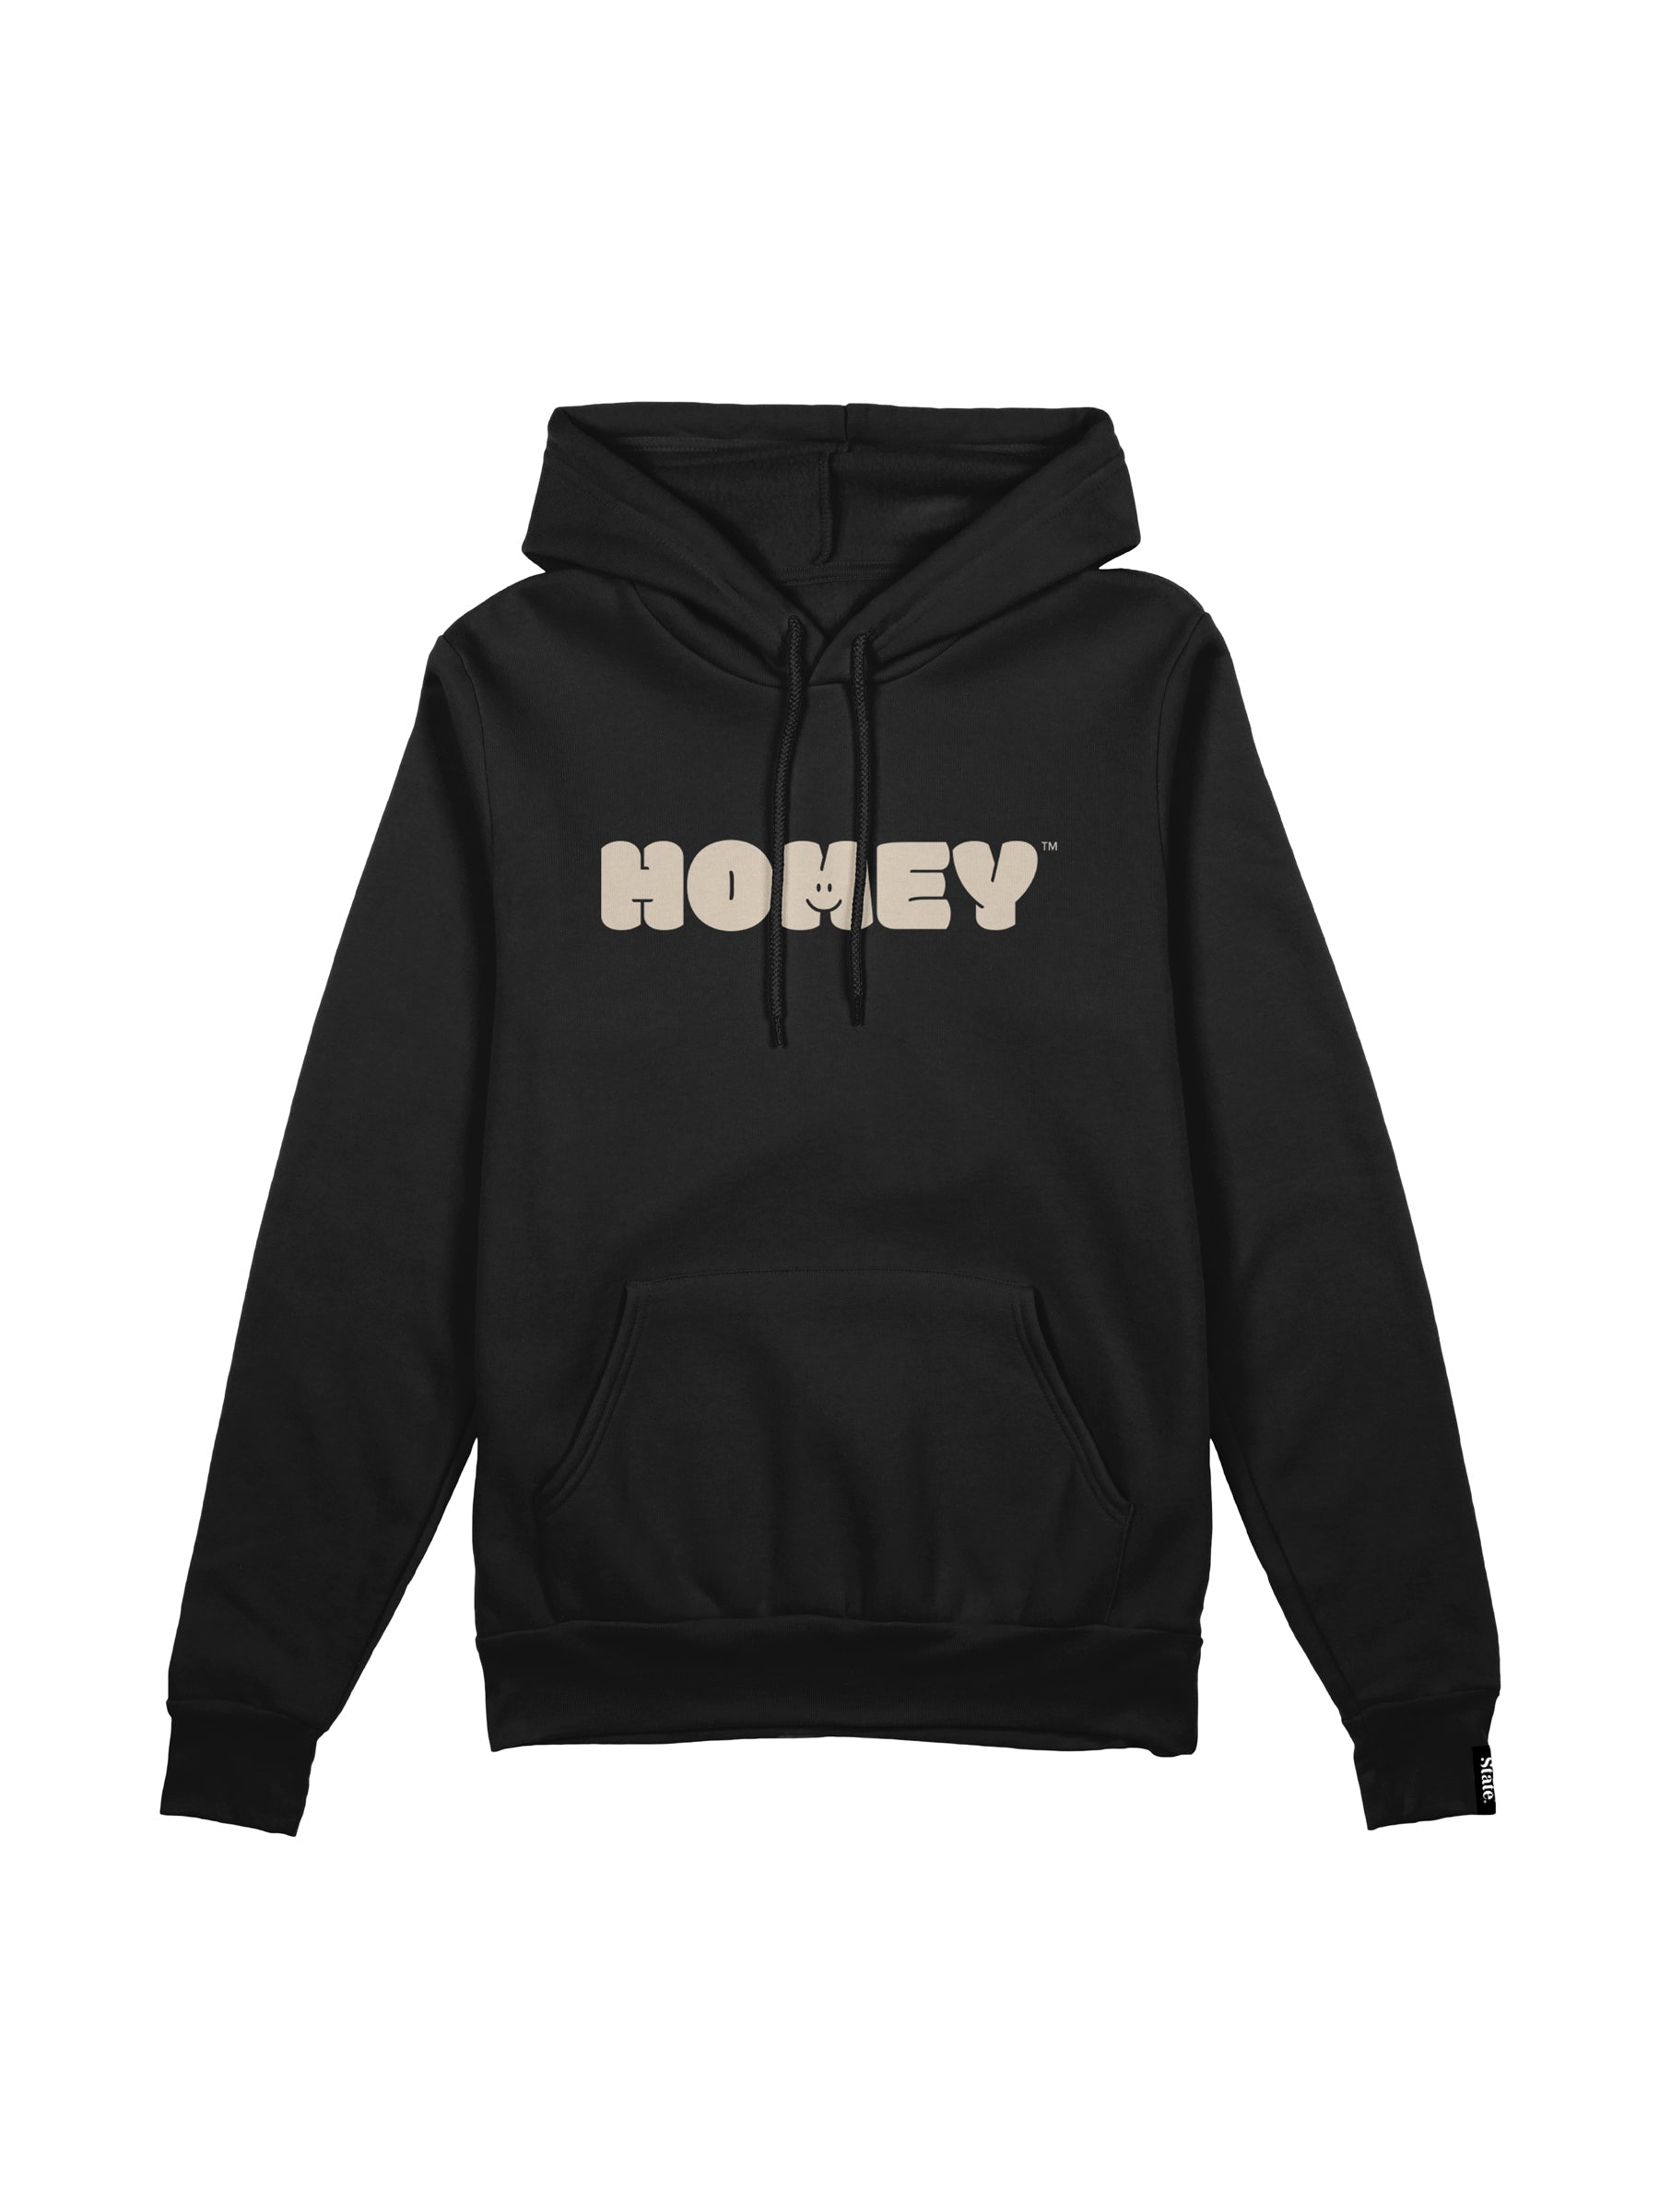 homey hoodie